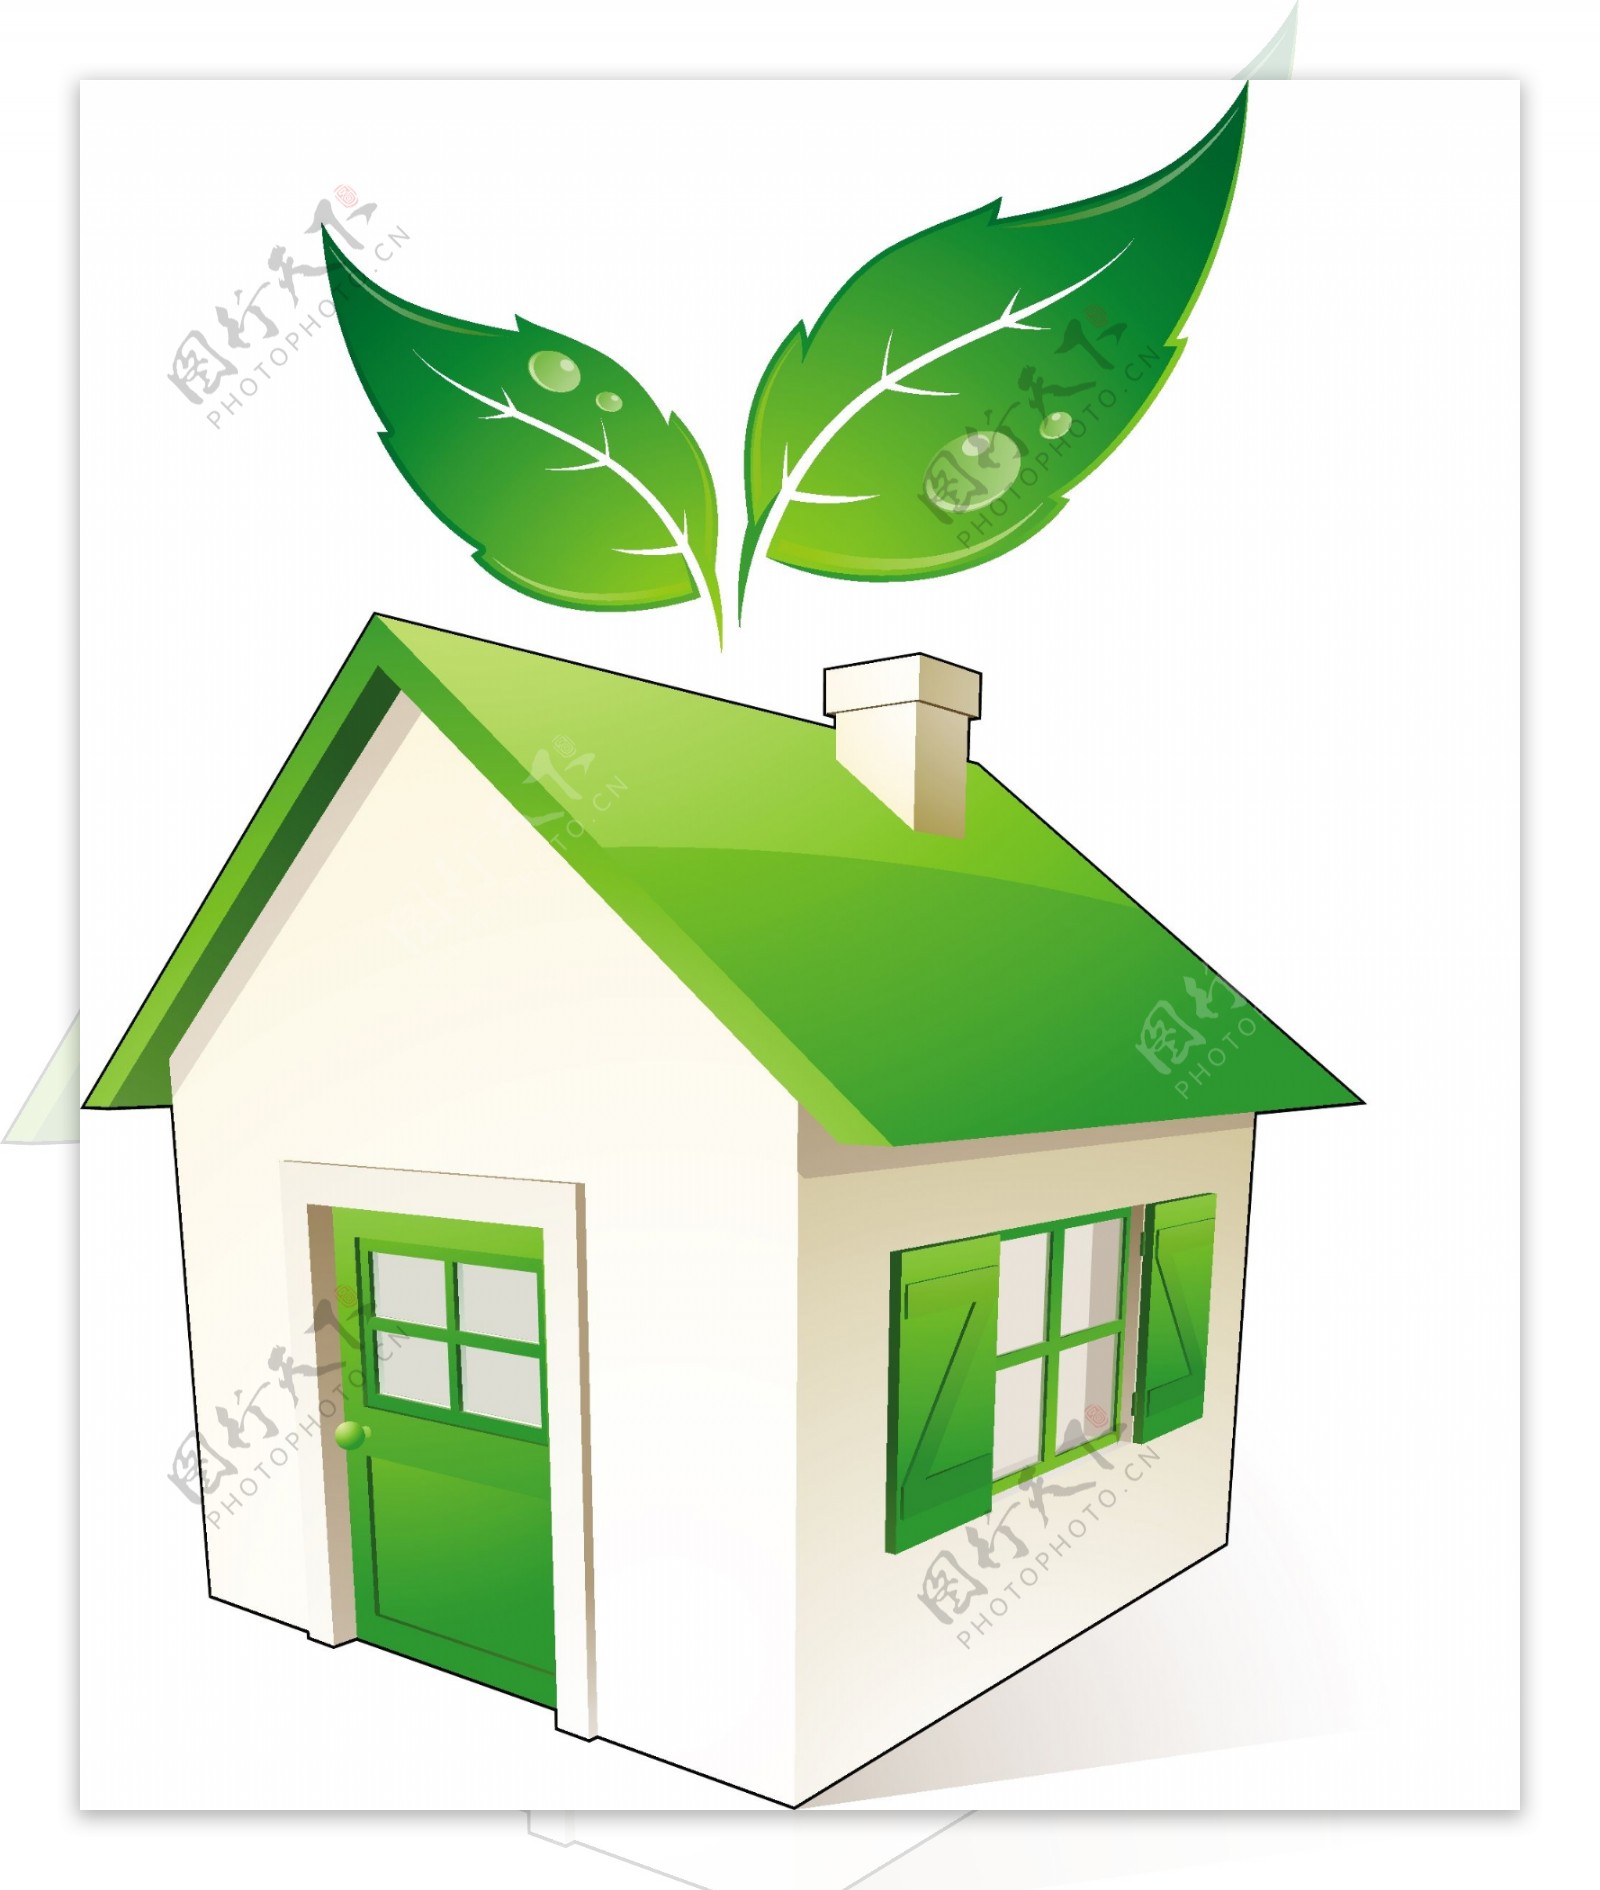 绿色房子矢量素材图片